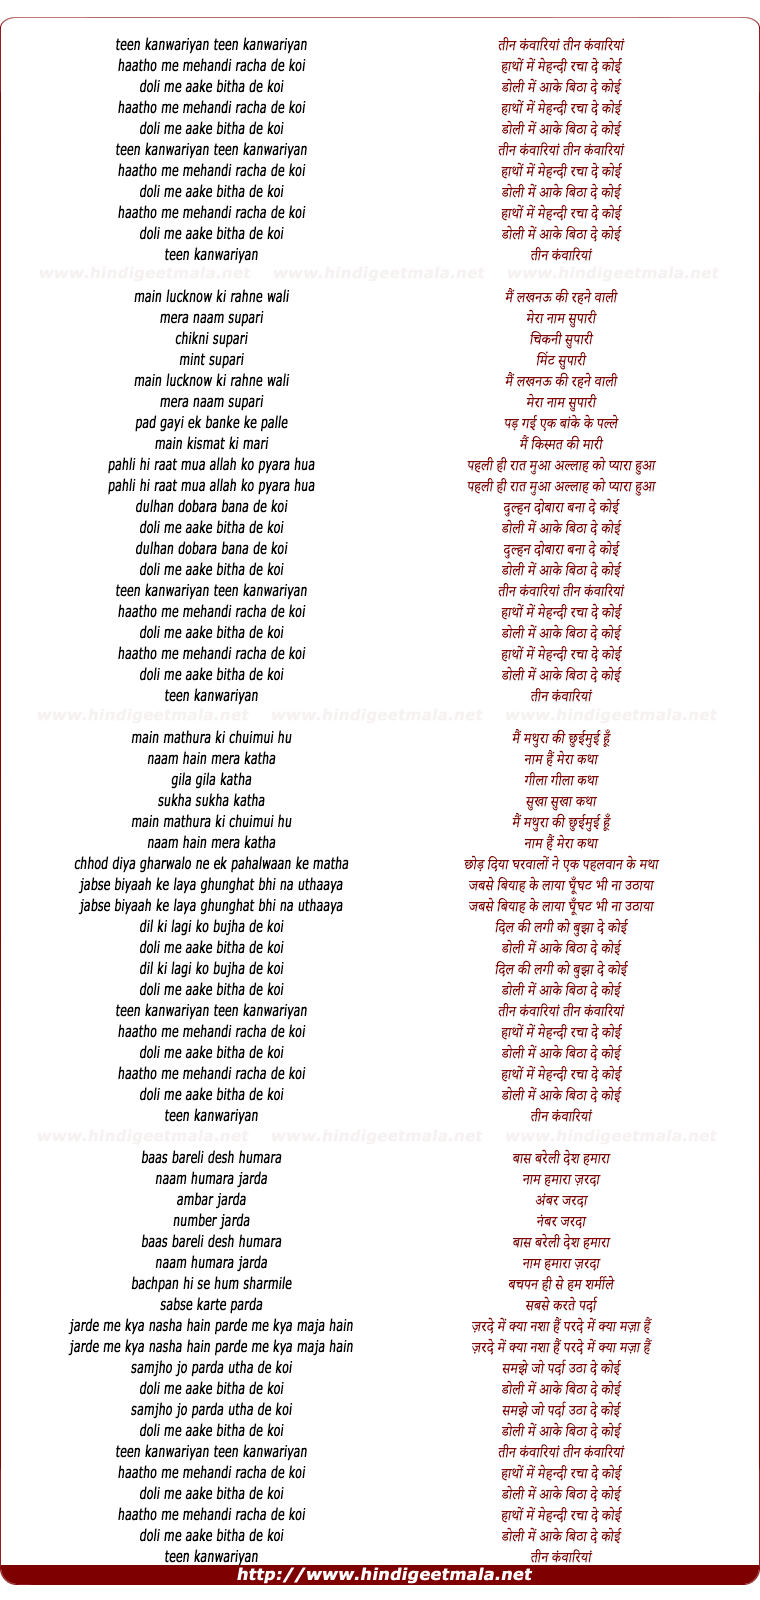 lyrics of song Teen Kanwariyaa Teen Kanwariya Hatho Me Mehndi Racha De Koi